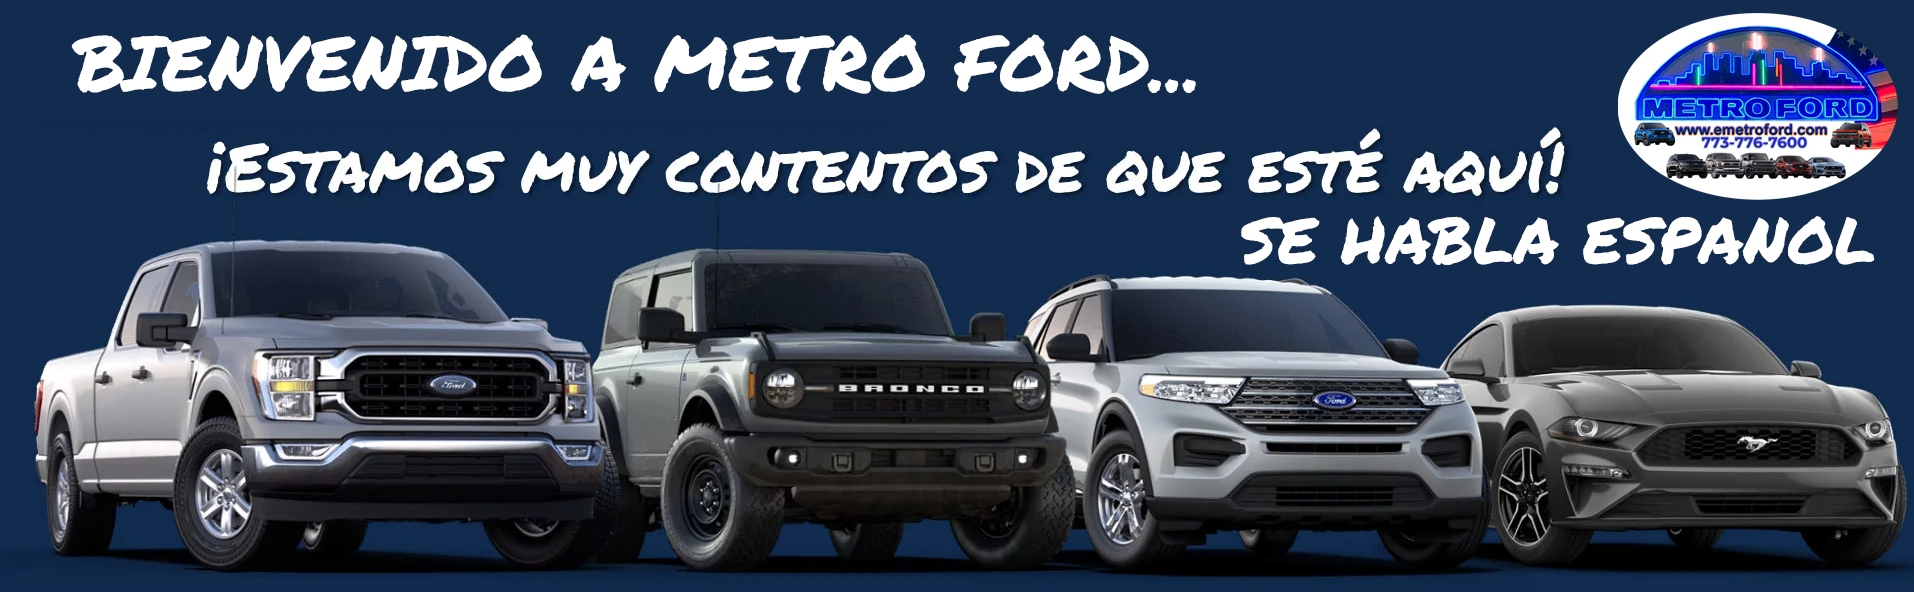 Bienvenido A Metro Ford